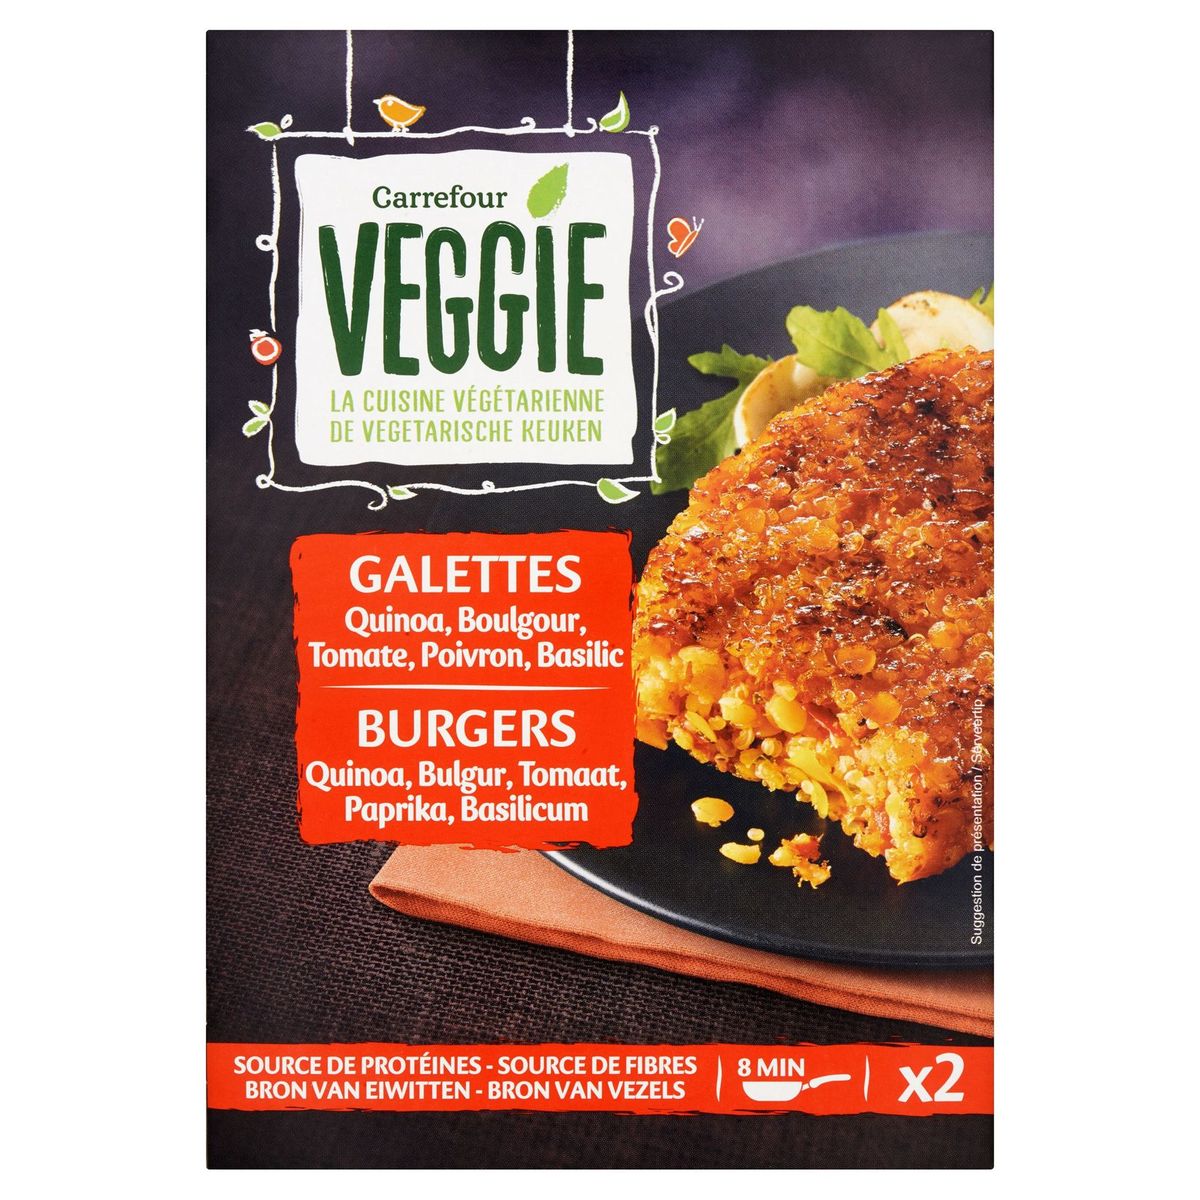 Carrefour Veggie Galettes Quinoa, Boulgour, Tomate, Poivron, Basilic 2 x 100 g